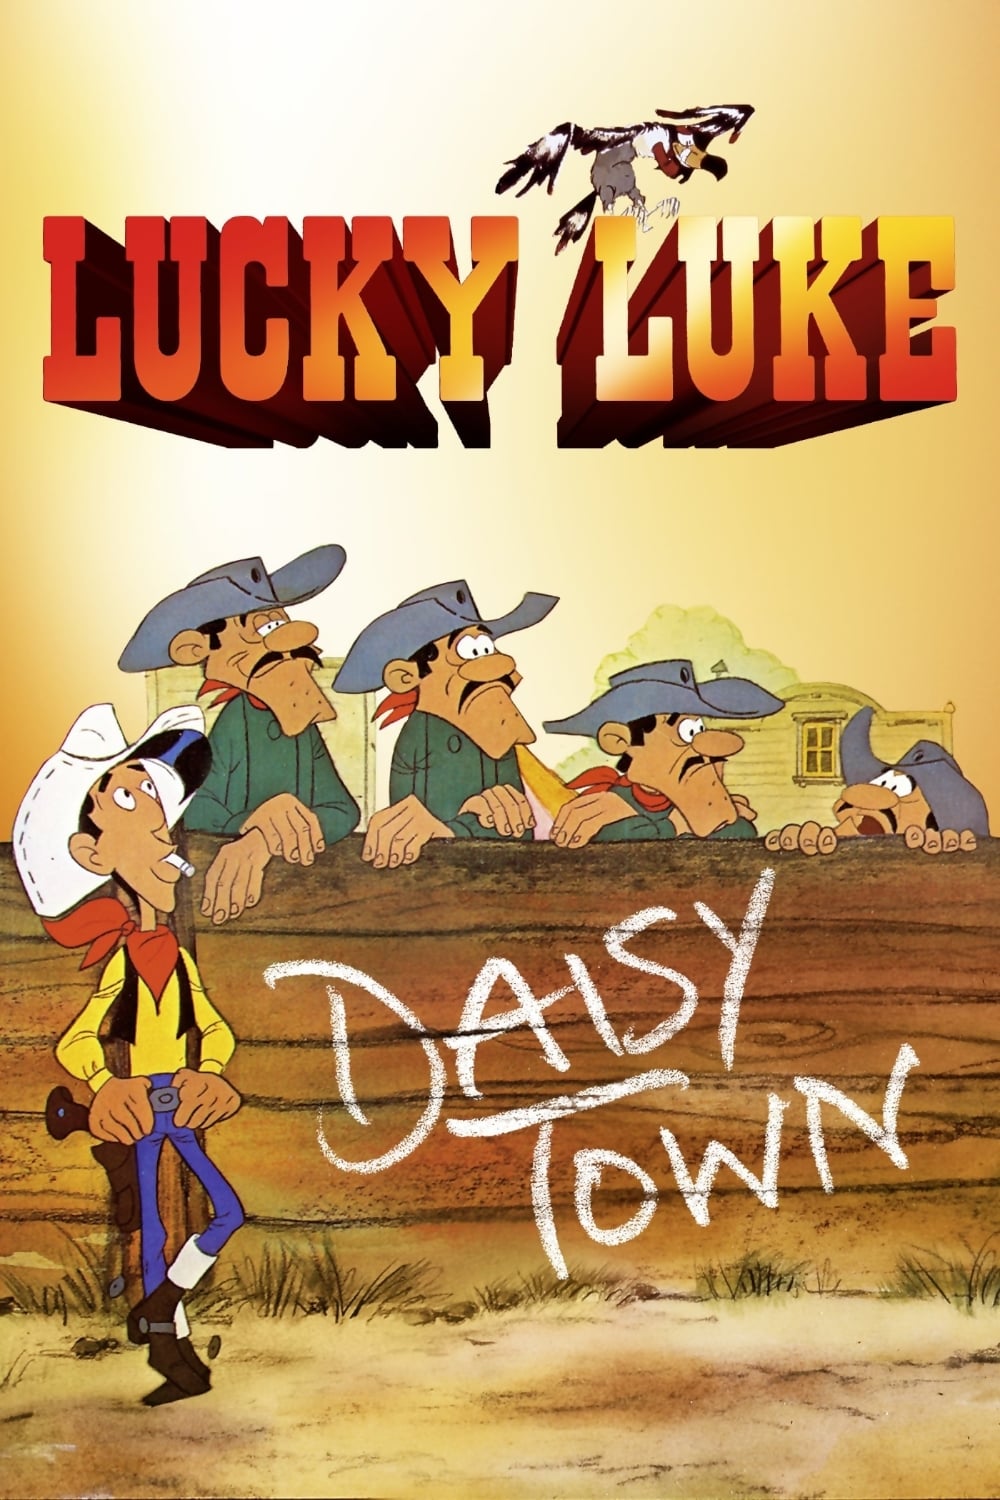 Lucky Luke - Daisy Town (1971)